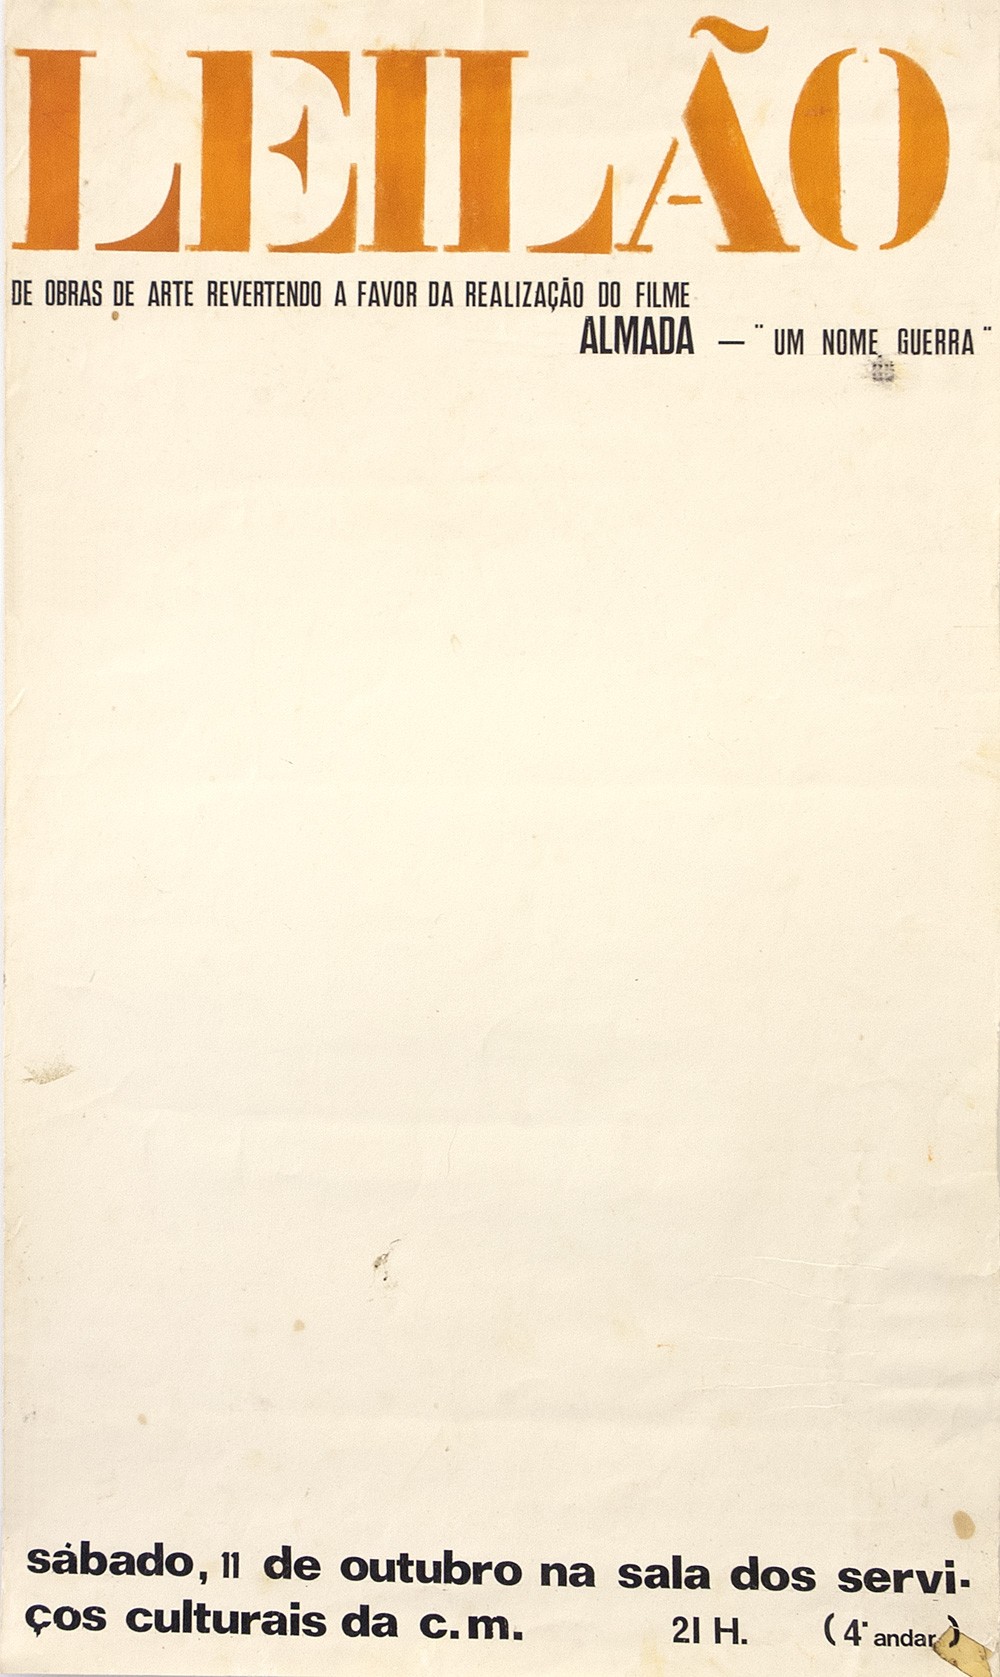  Cartaz para o leilão na SNBA de obras doadas pelos artistas para financiamento filme, 1968. 